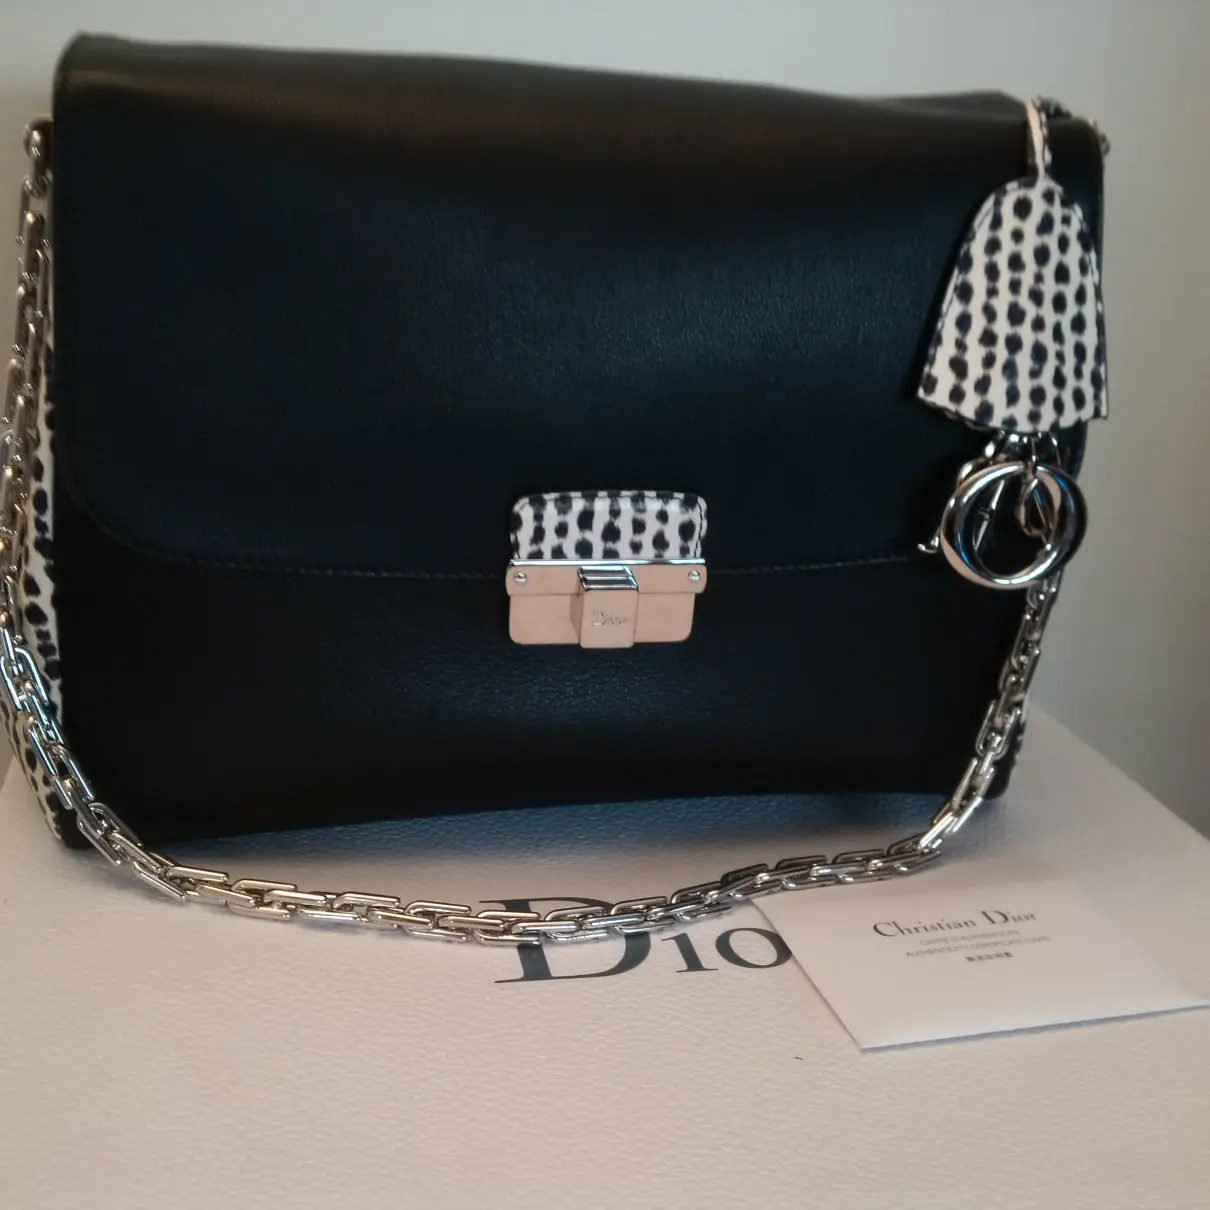 Buy Dior Diorling leather handbag online